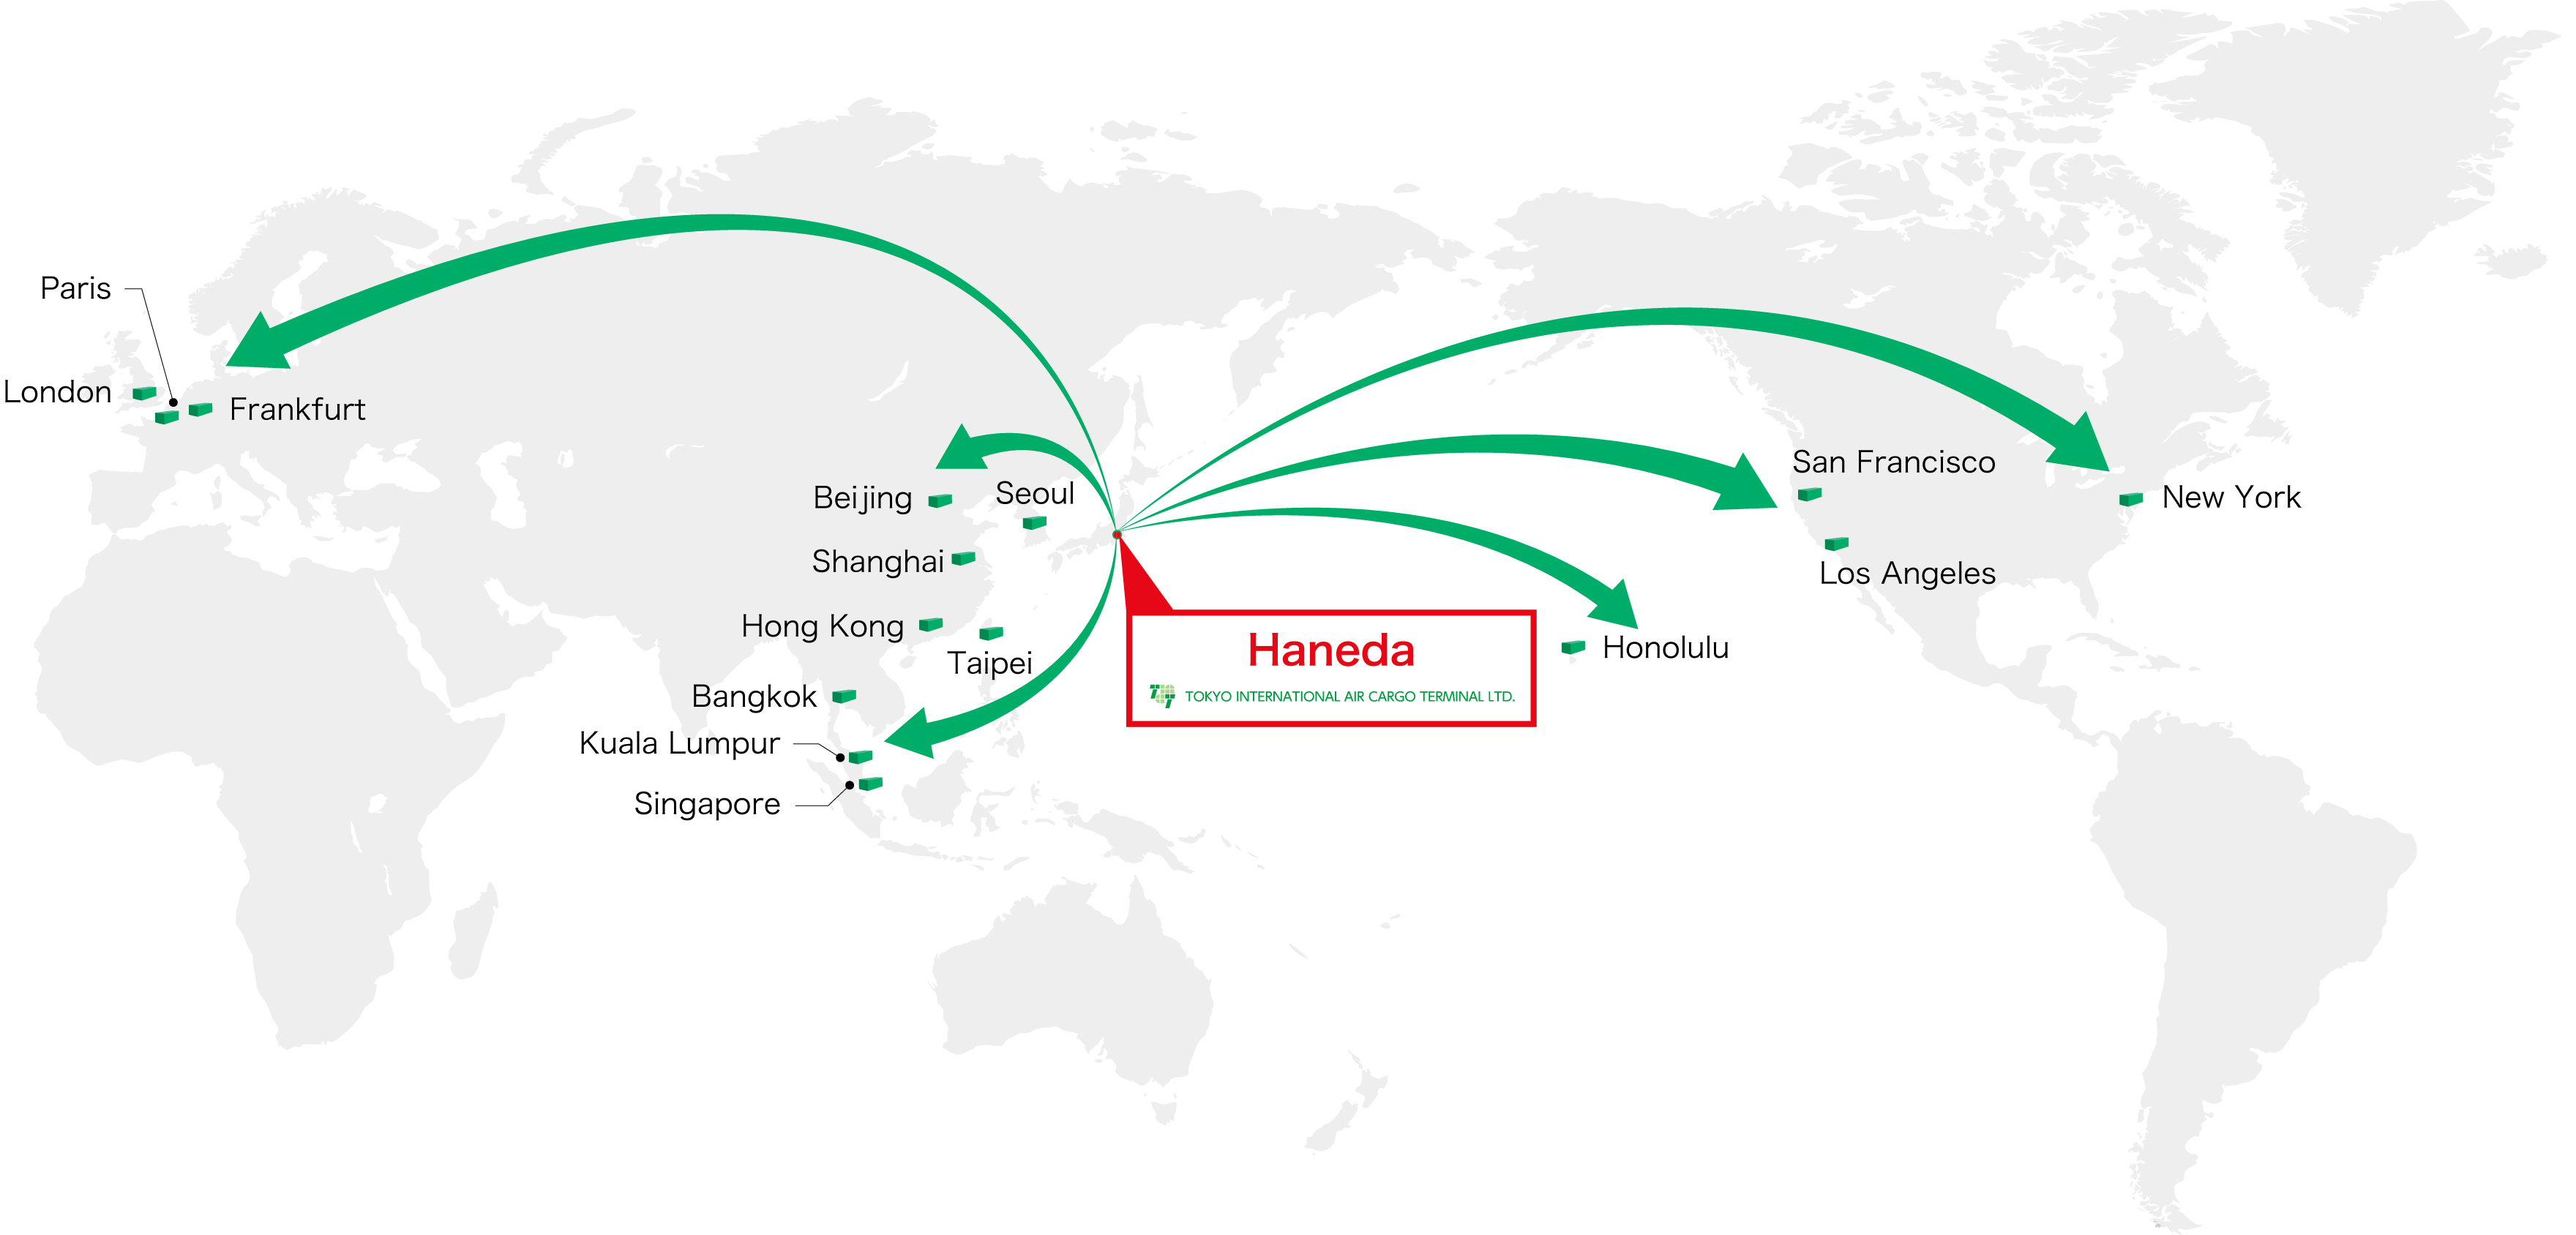 国際線就航ネットワークの図